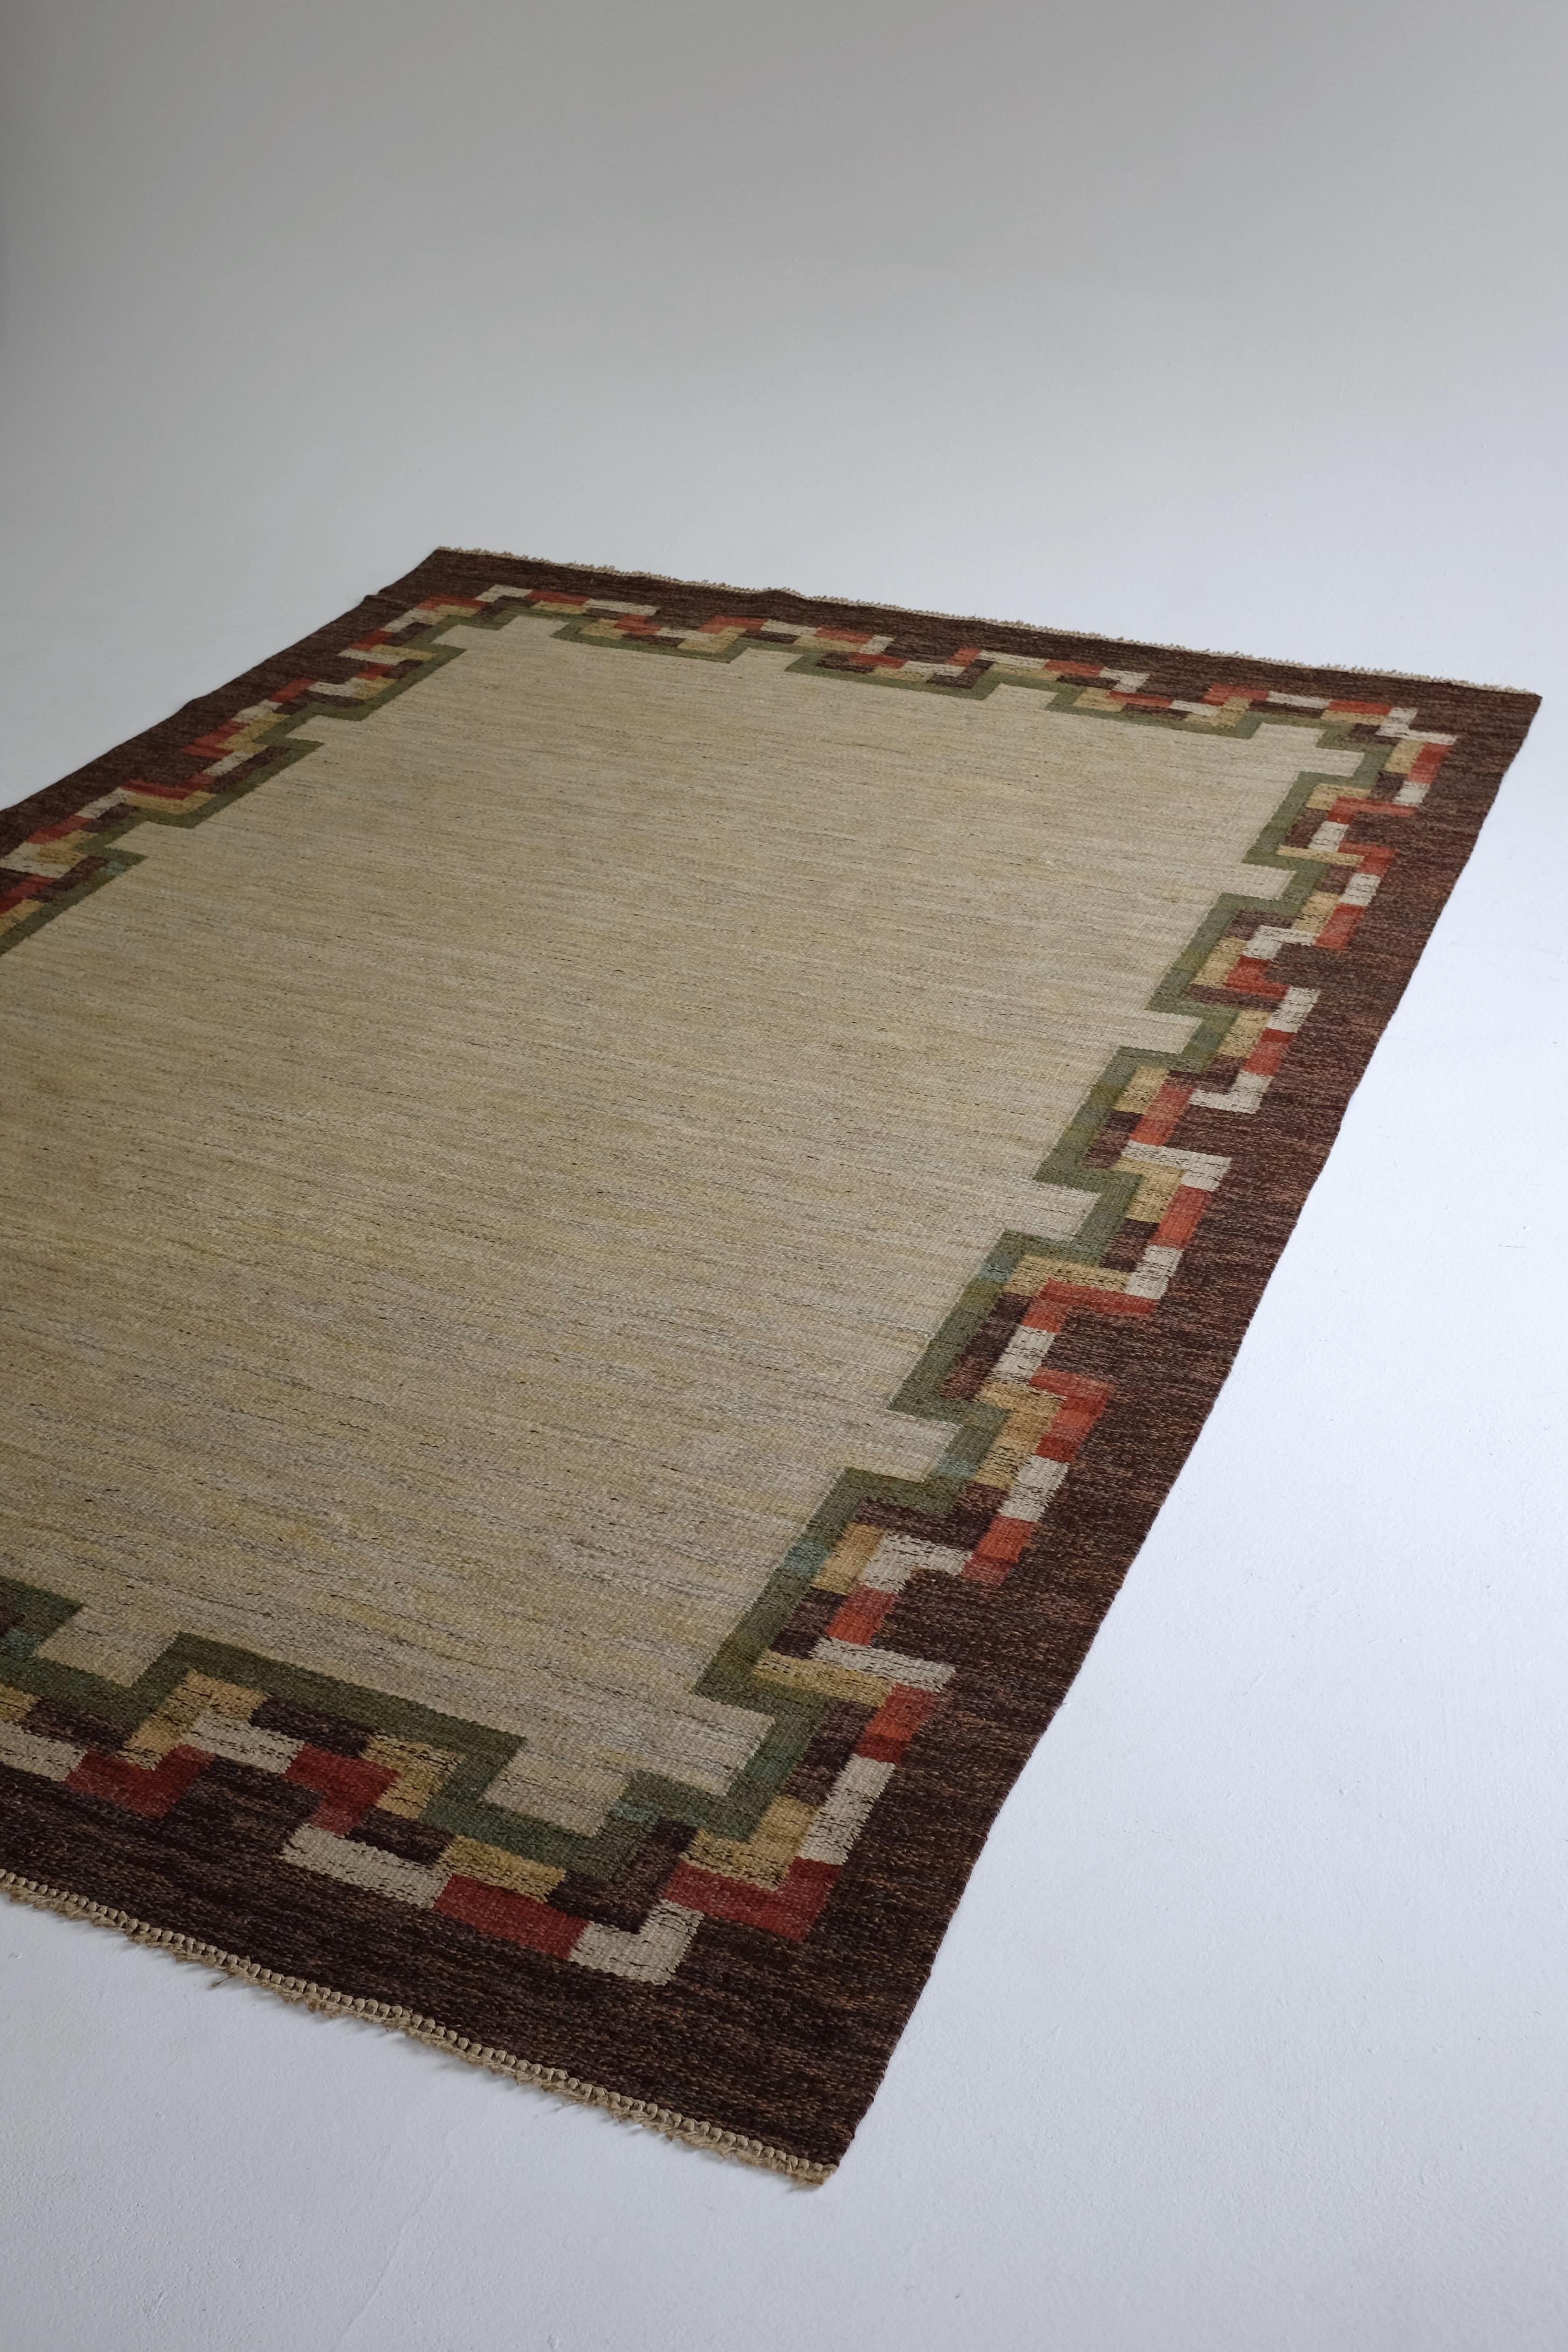 Großer schwedischer Vintage-Kilim-Teppich von unbekanntem Designer. Braune Bordüre mit grünem, weißem und rotem geometrischem Muster auf einer großen beigen Fläche in der Mitte. Die Fransen wurden gekürzt und mit leichten Gebrauchsspuren ist es in